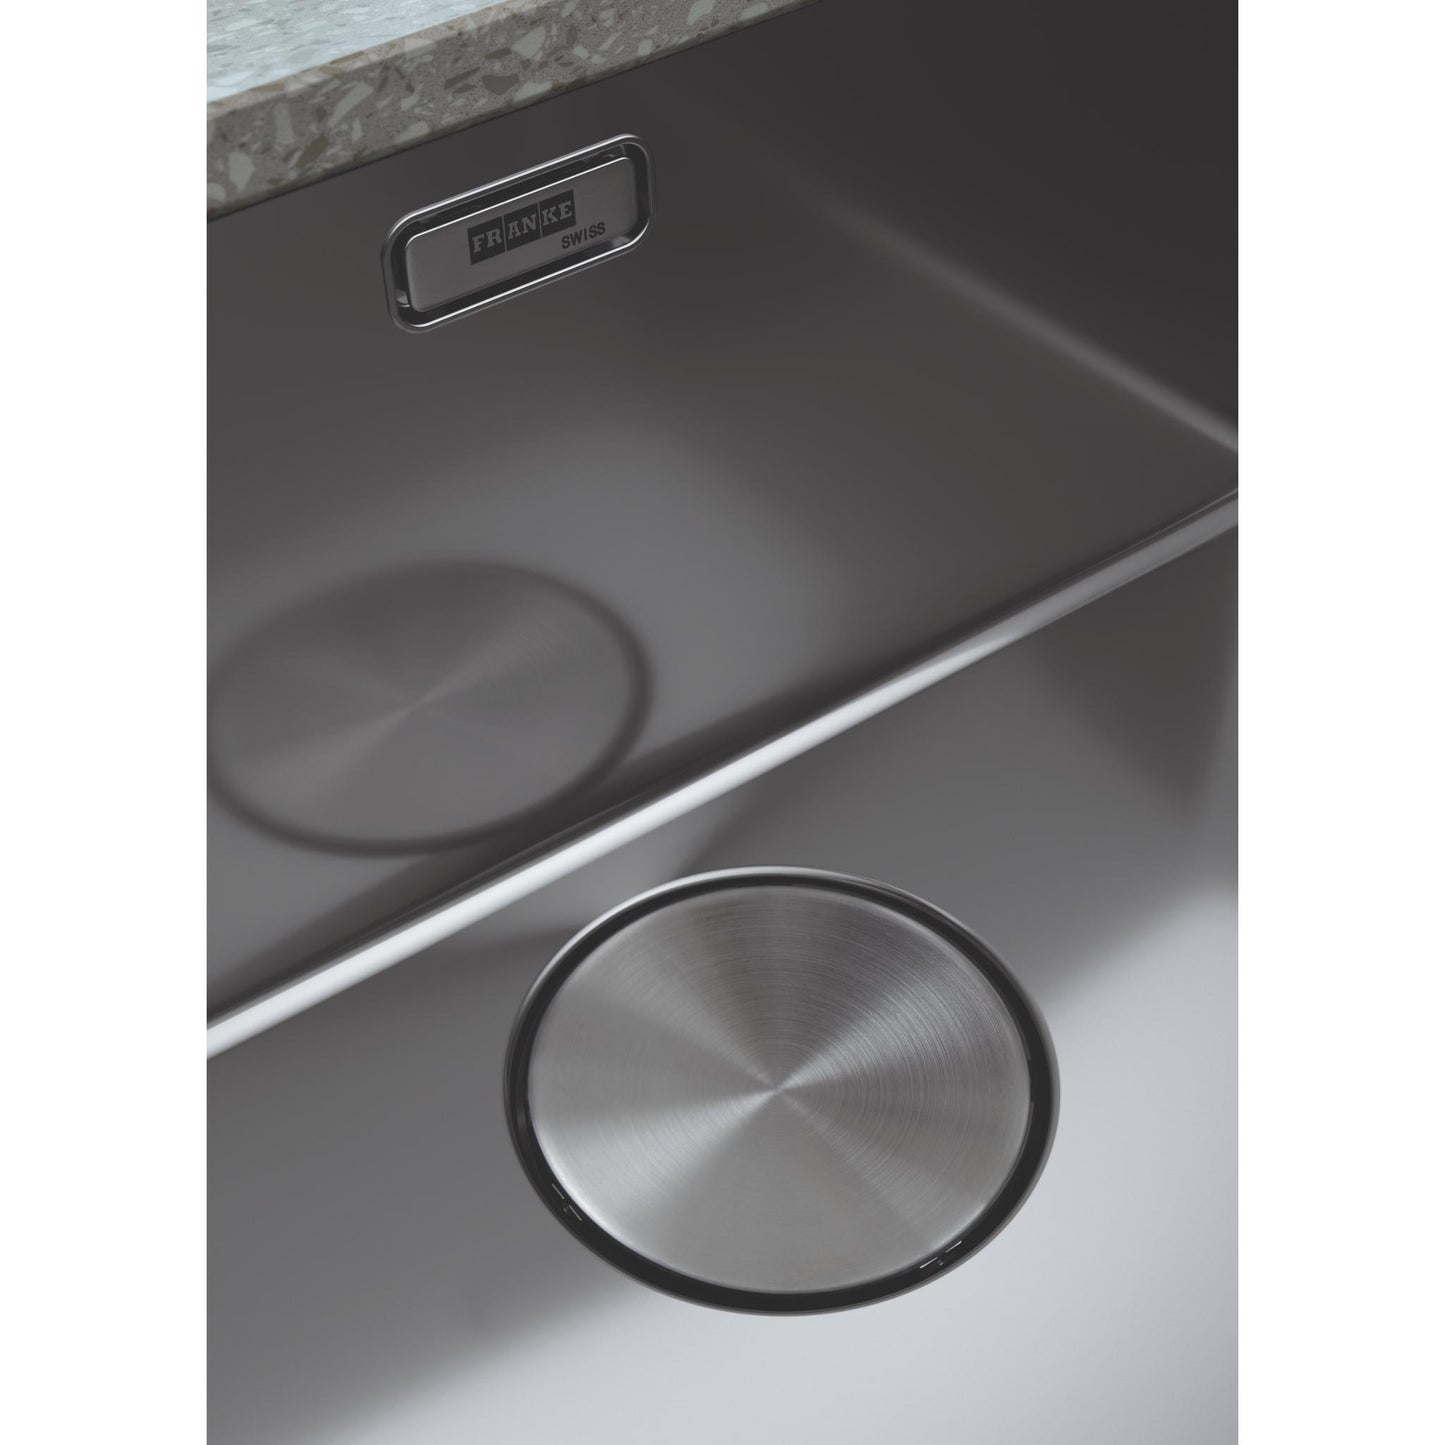 Franke Mythos Kitchen Sink Plug Close Up View